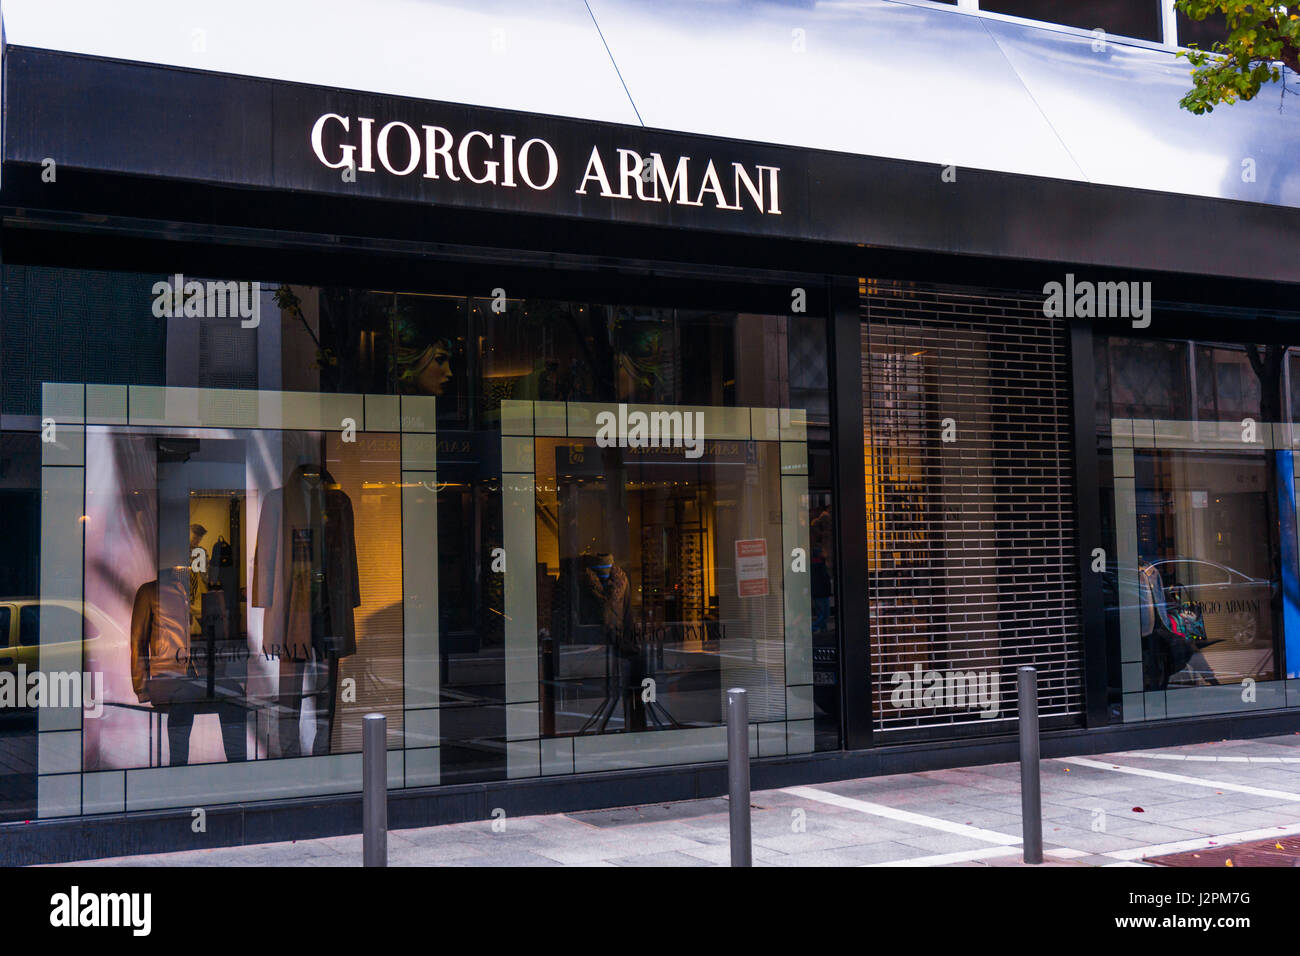 Giorgio Armani signage above 